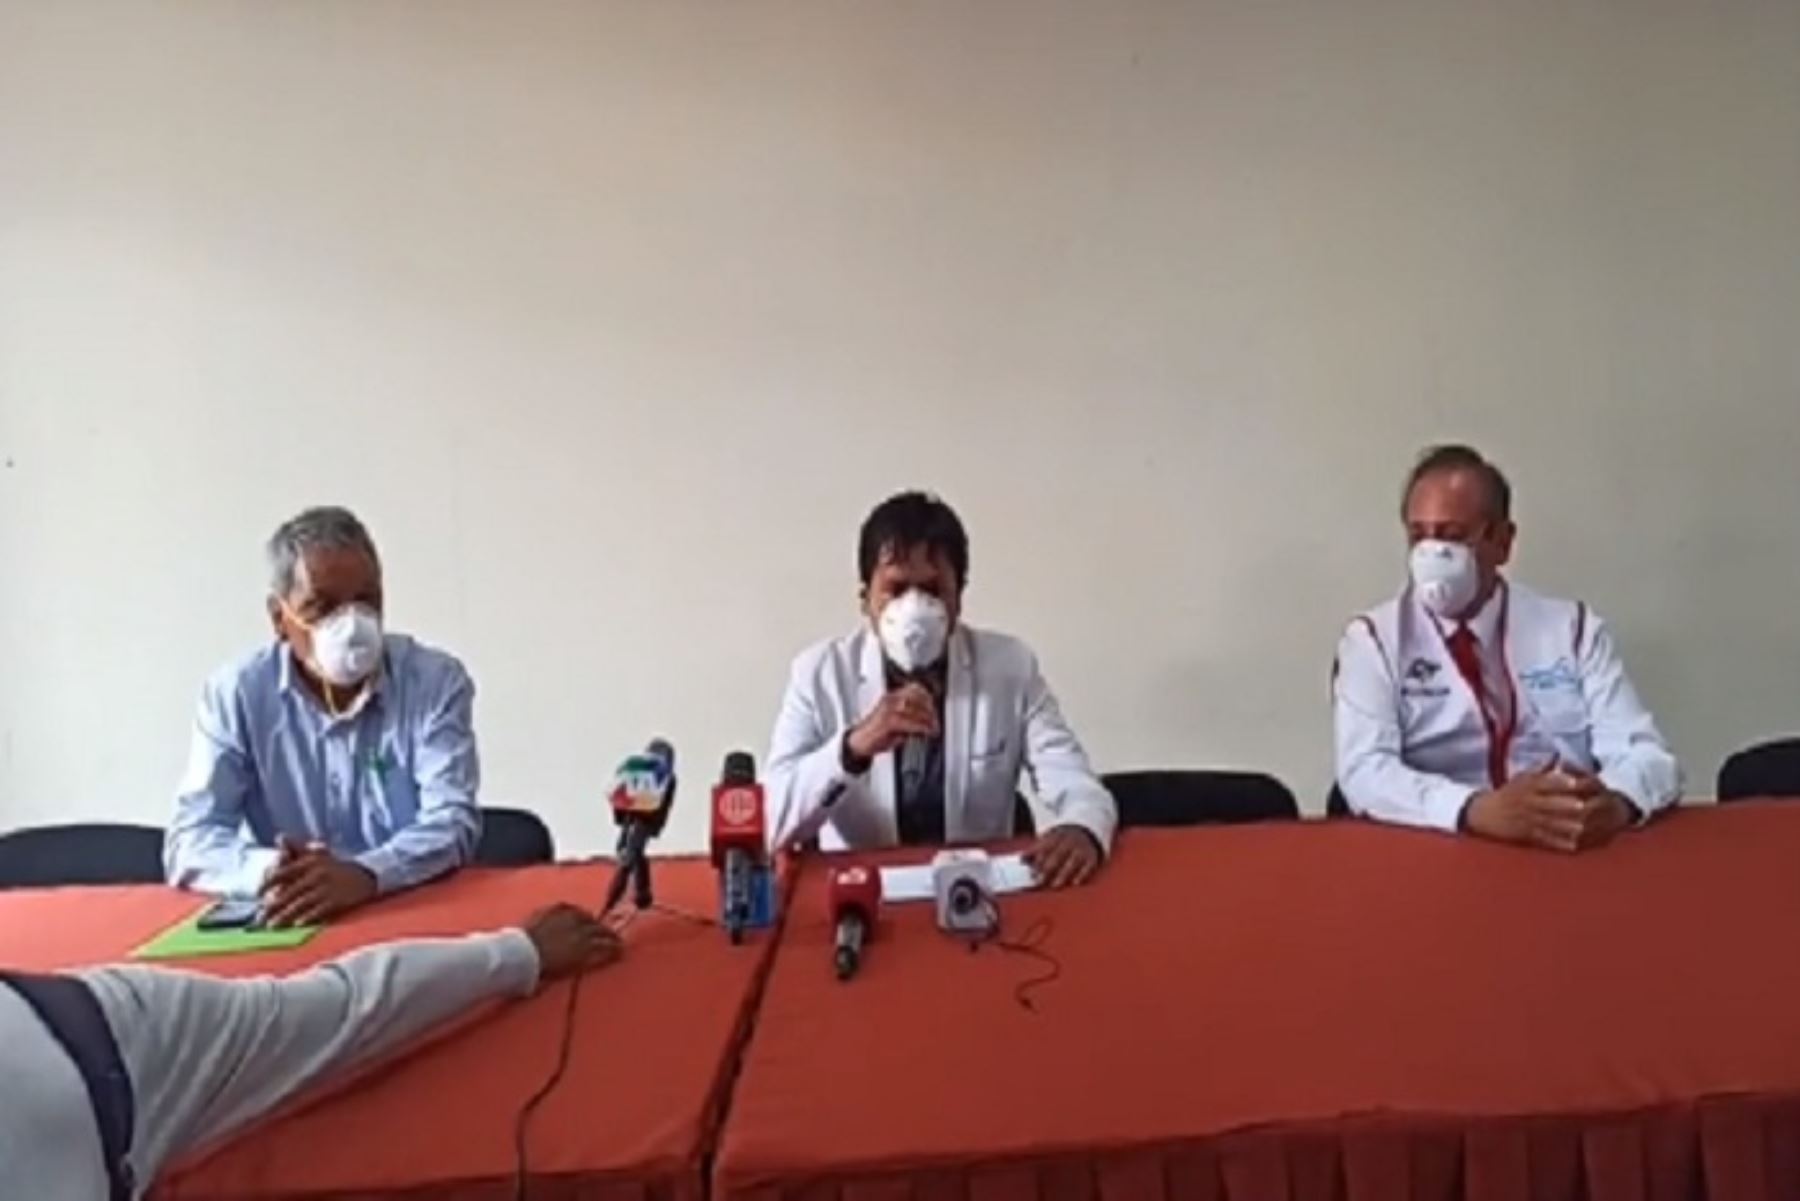 Los pacientes dados de alta son las dos primeras personas diagnosticadas con coronavirus en Arequipa, las mismas que mostraron un cuadro de salud estable durante el tiempo que permanecieron aislados, informó el gobernador Elmer Cáceres Llica.